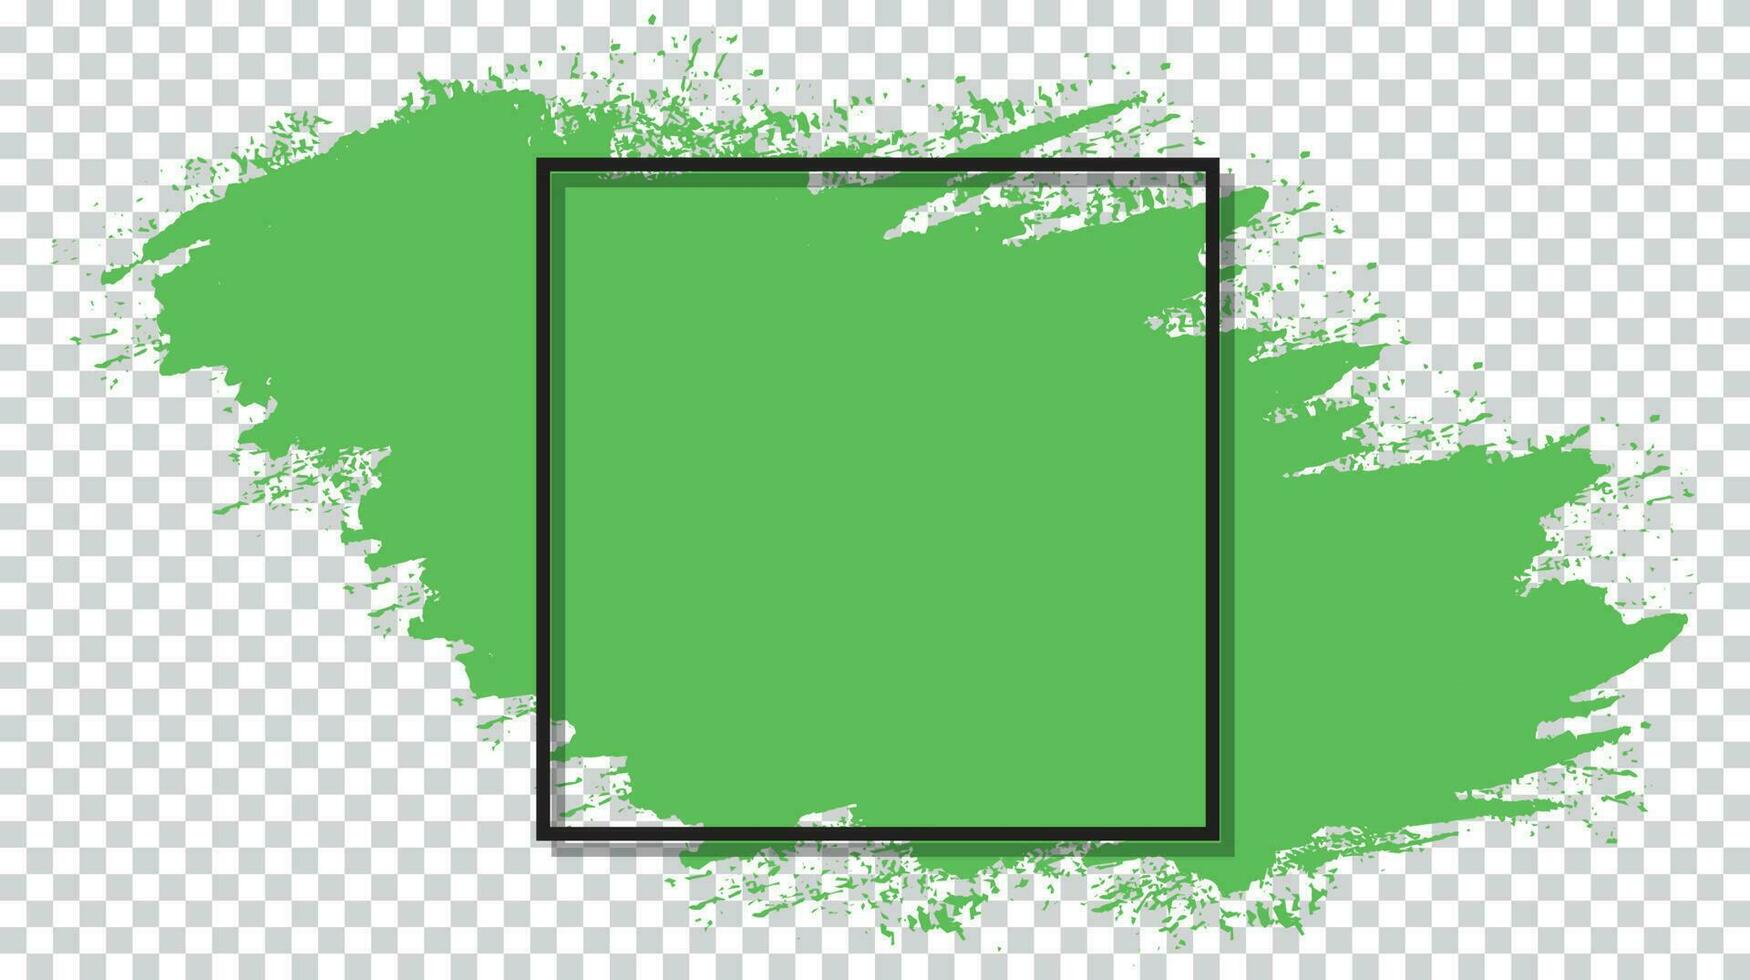 inkt borstel beroerte groen kleur grunge structuur achtergrond vector